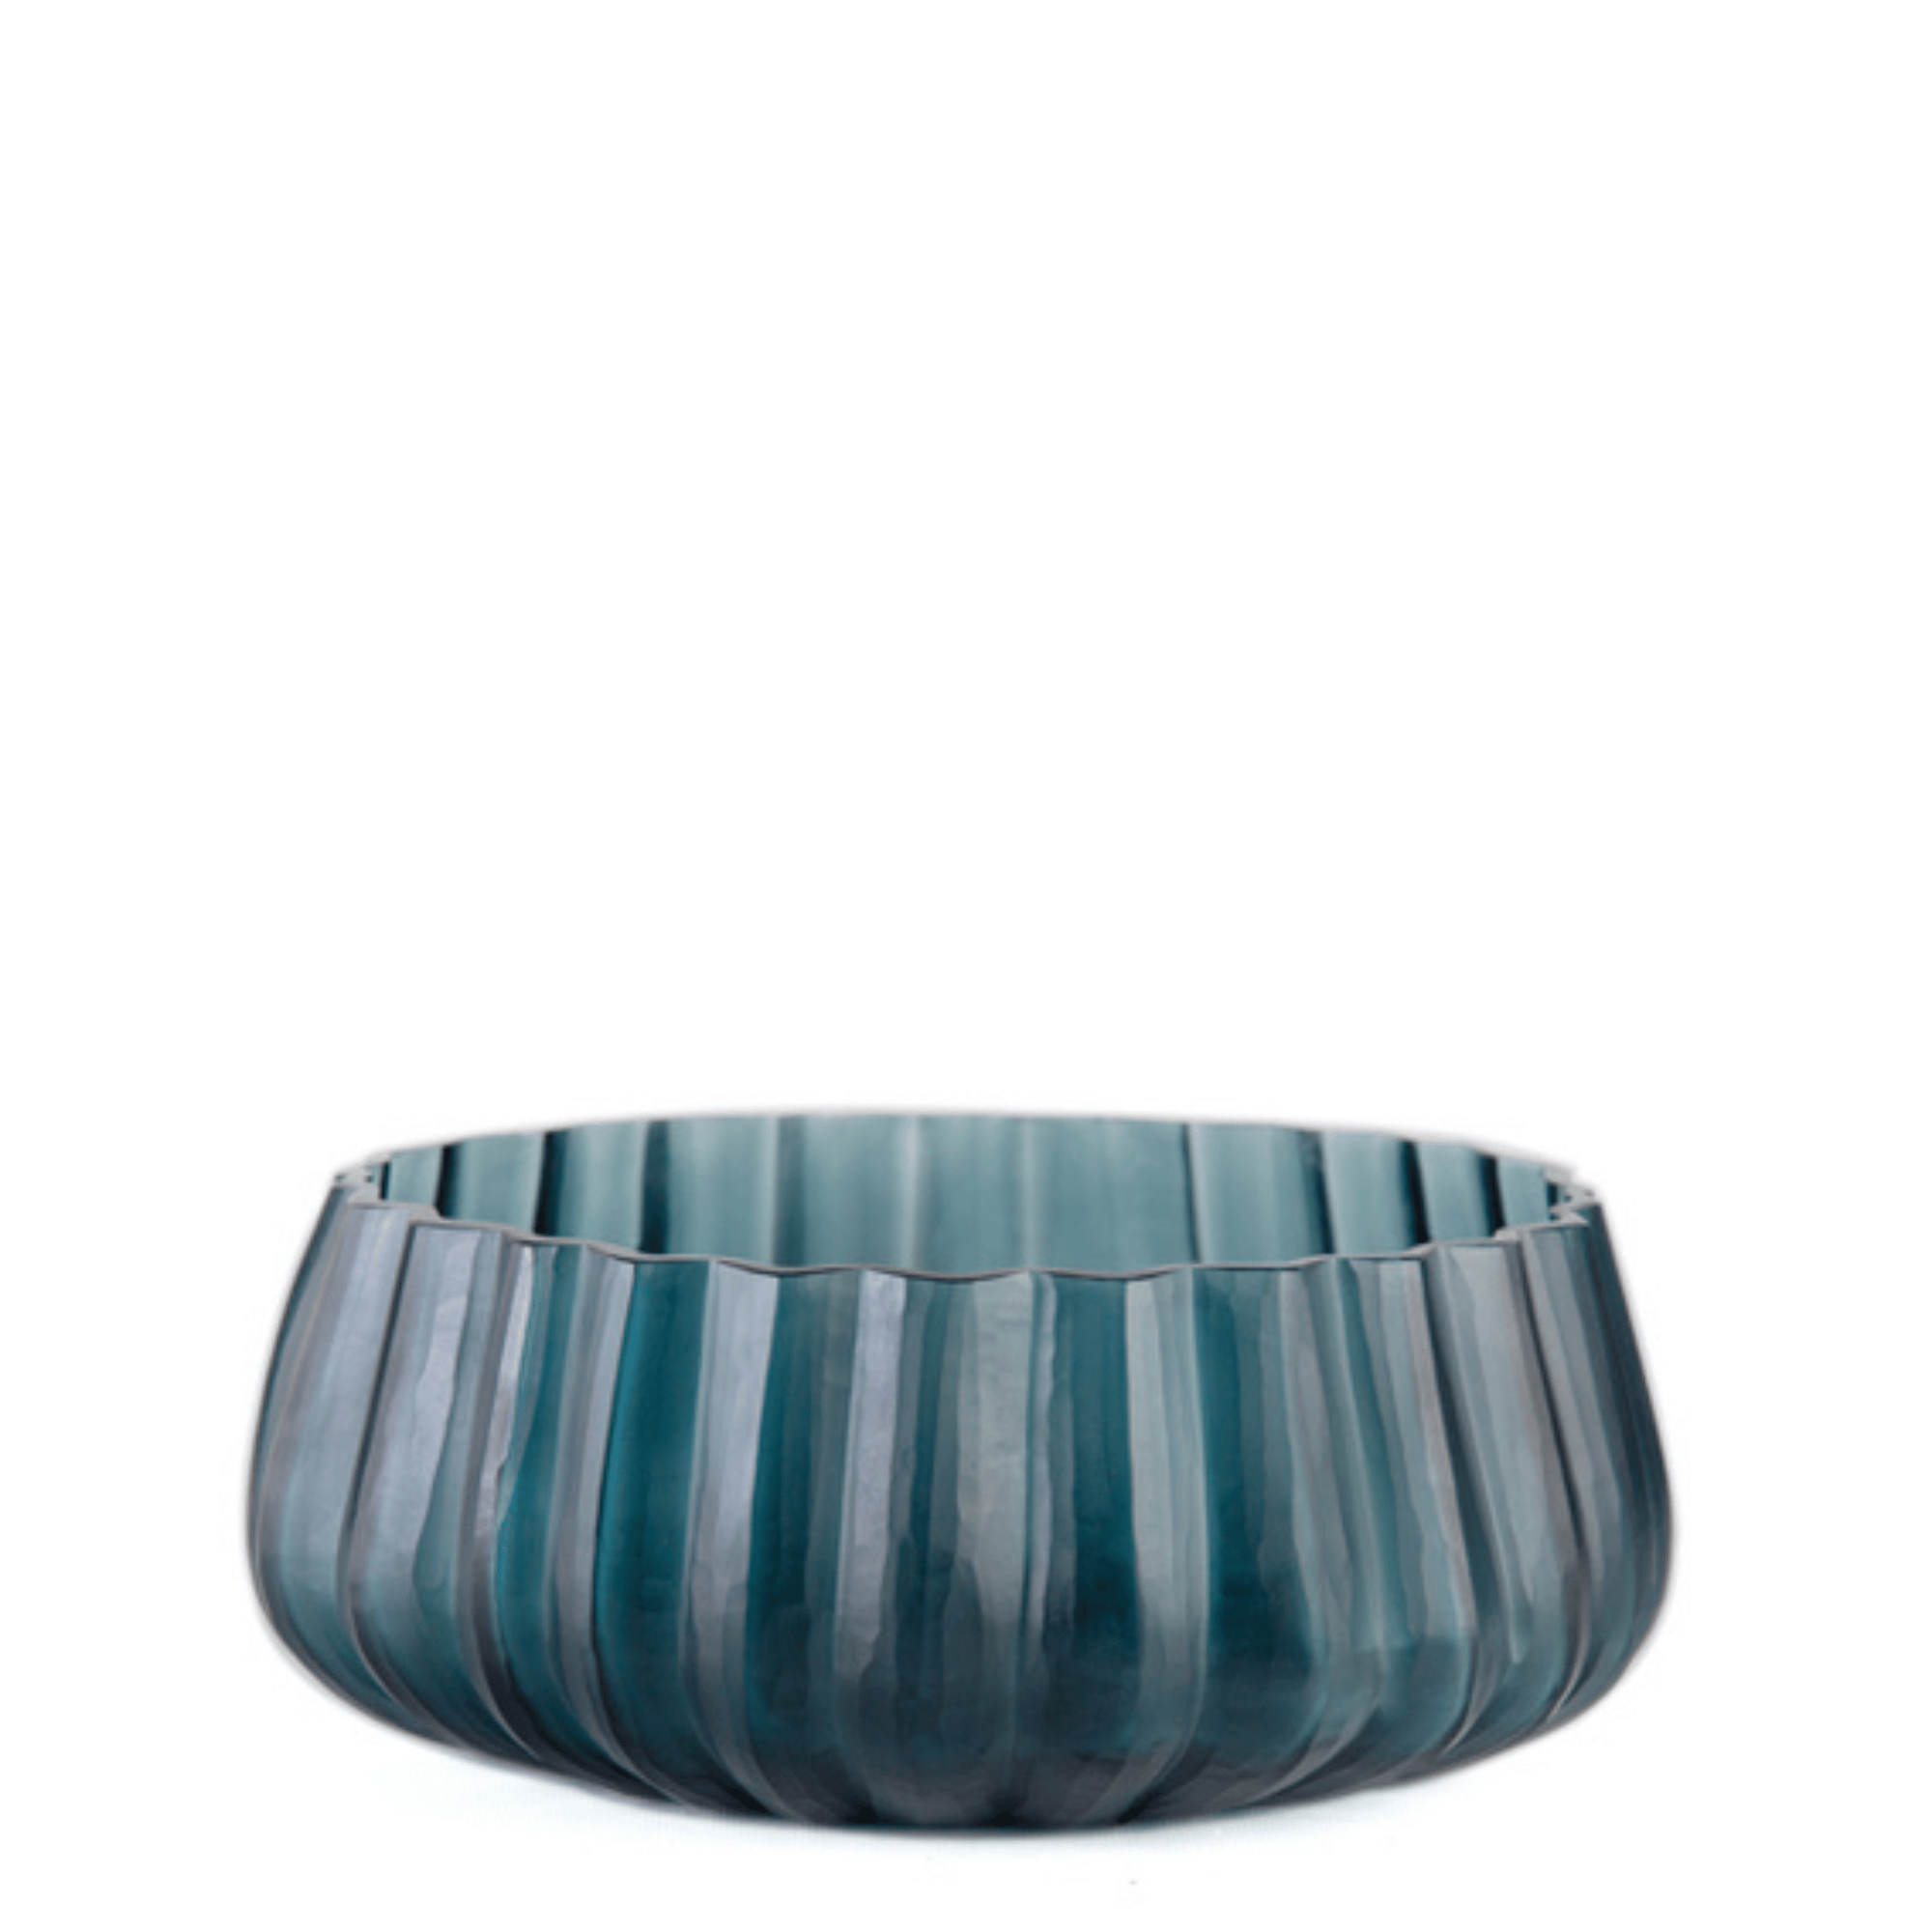 Guaxs blue glass decor bowl 